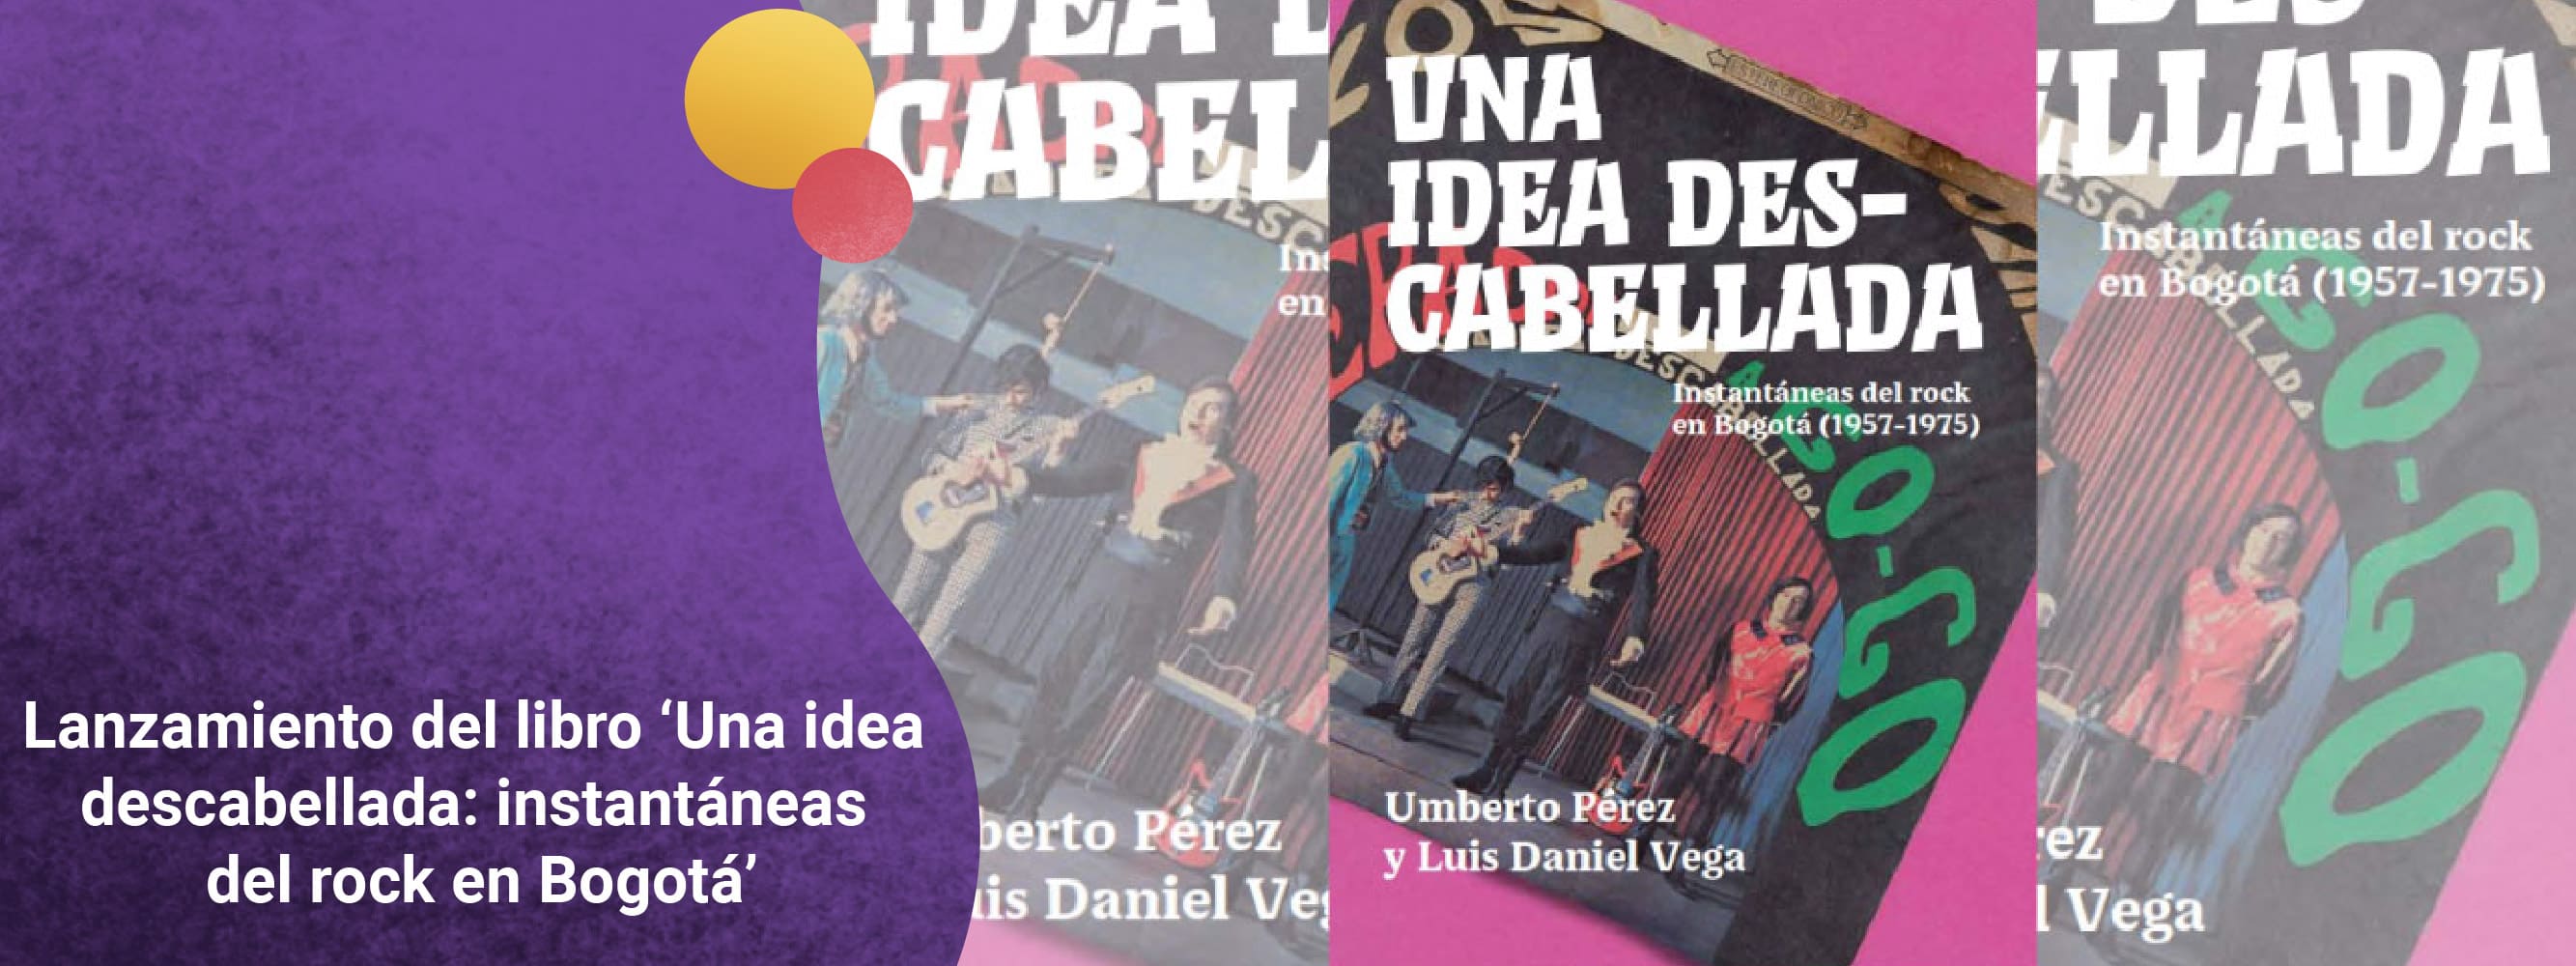 Lanzamiento del libro ‘Una idea descabellada: instantáneas del rock en Bogotá’